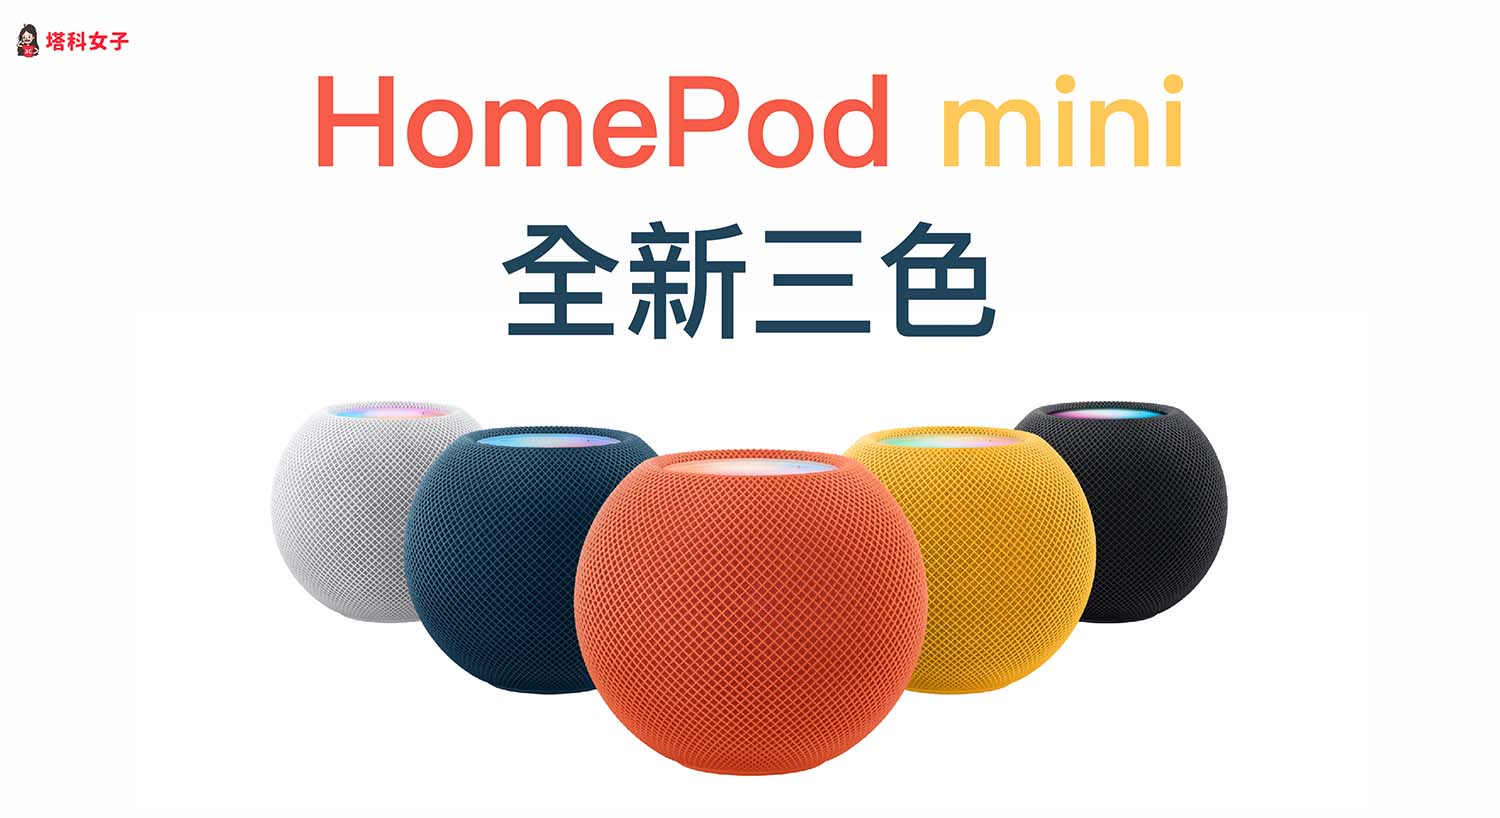 2021 HomePod mini：全新三款顏色、預購日、發售日、價格懶人包